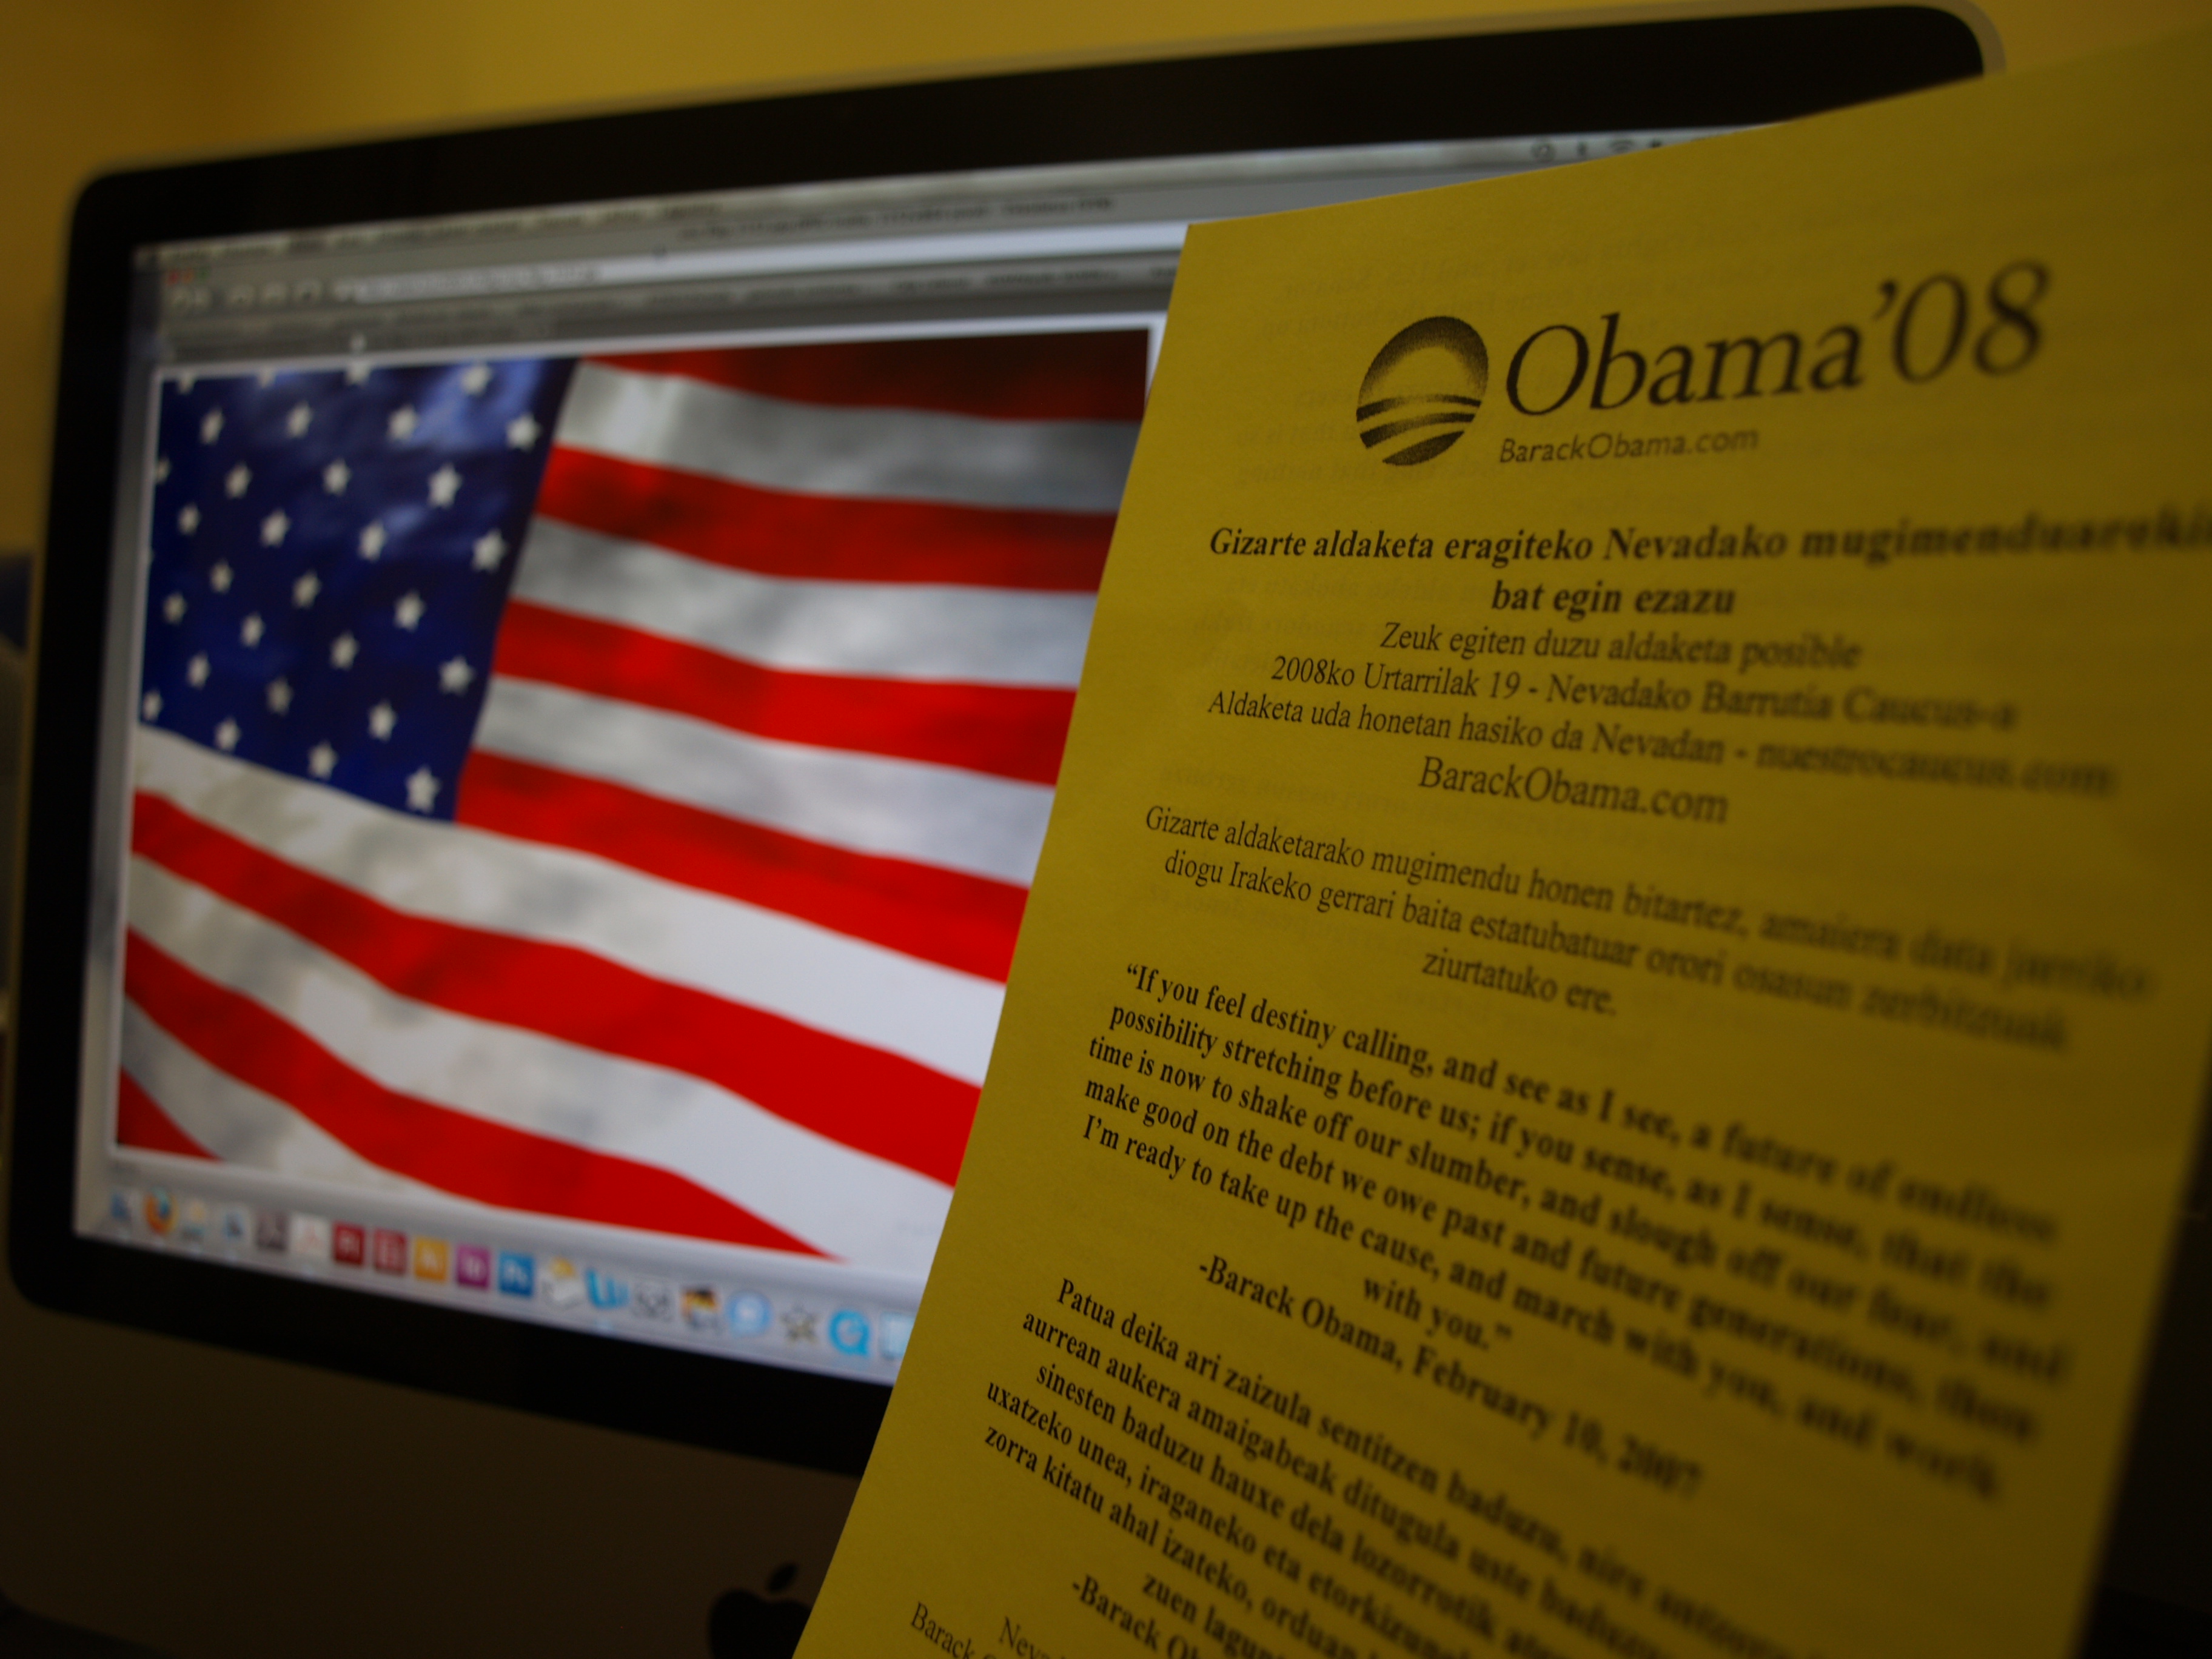 Propaganda de Barack Obama en euskera repartido en Nevada (hacer click en la imagen para leer el texto)